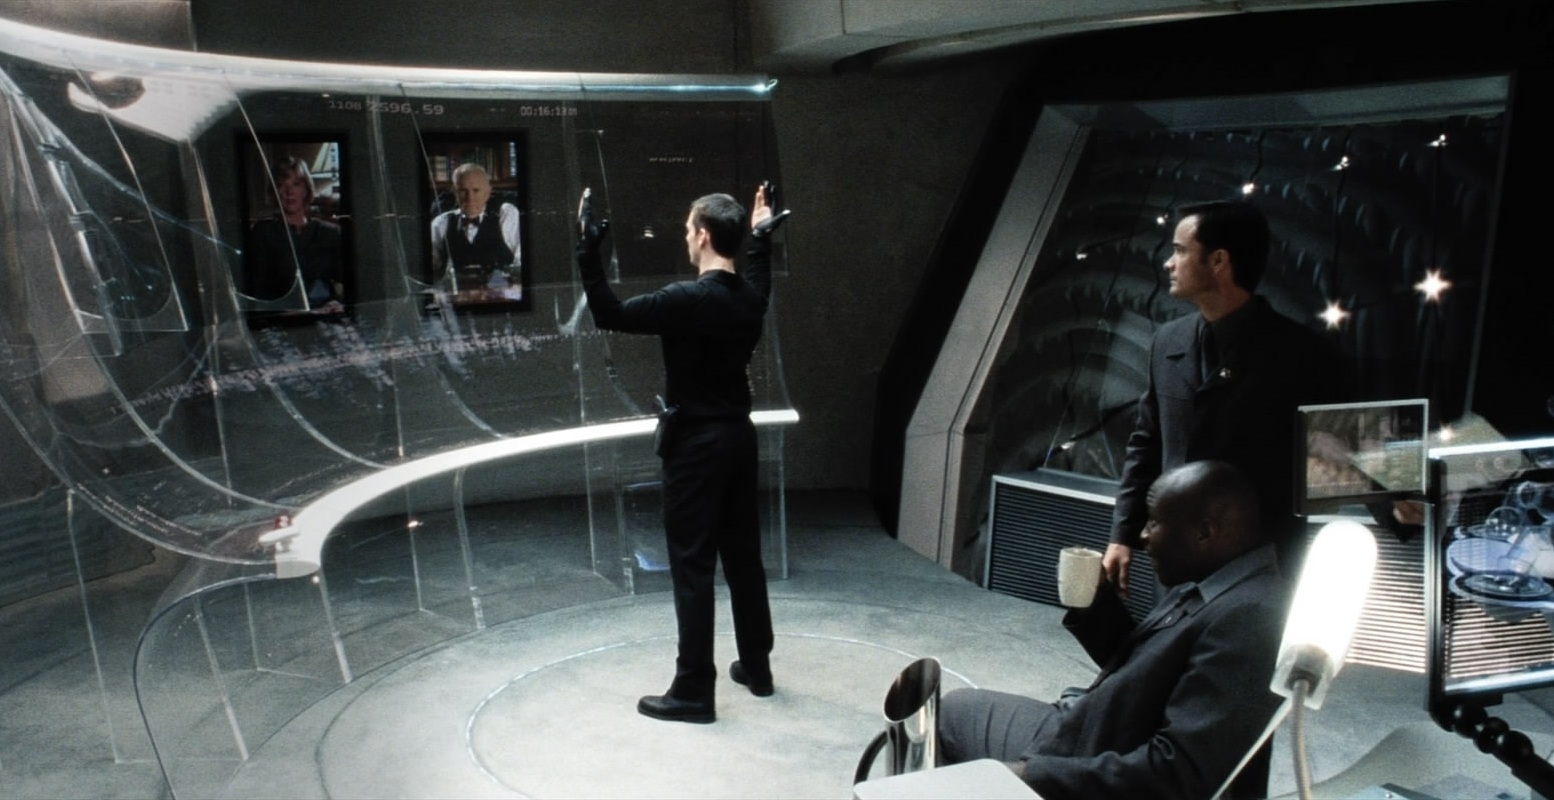 Tom Cruise, vestido inteiramente de preto, gesticula em frente a uma tela curva e transparente, observado por outros dois homens.